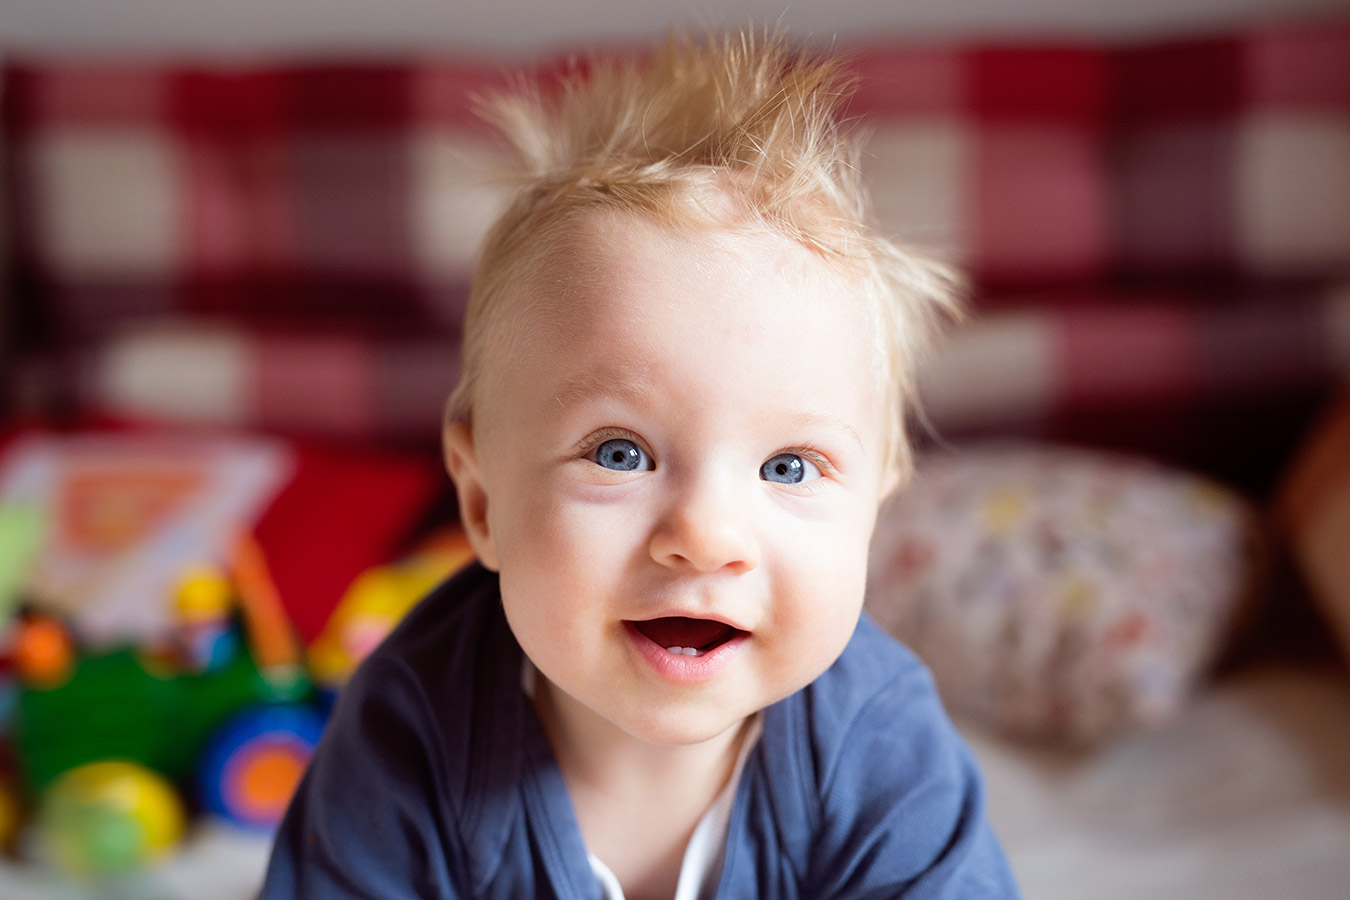 Włosy u dziecka. Włosy u noworodka i niemowlaka – problemy i porady